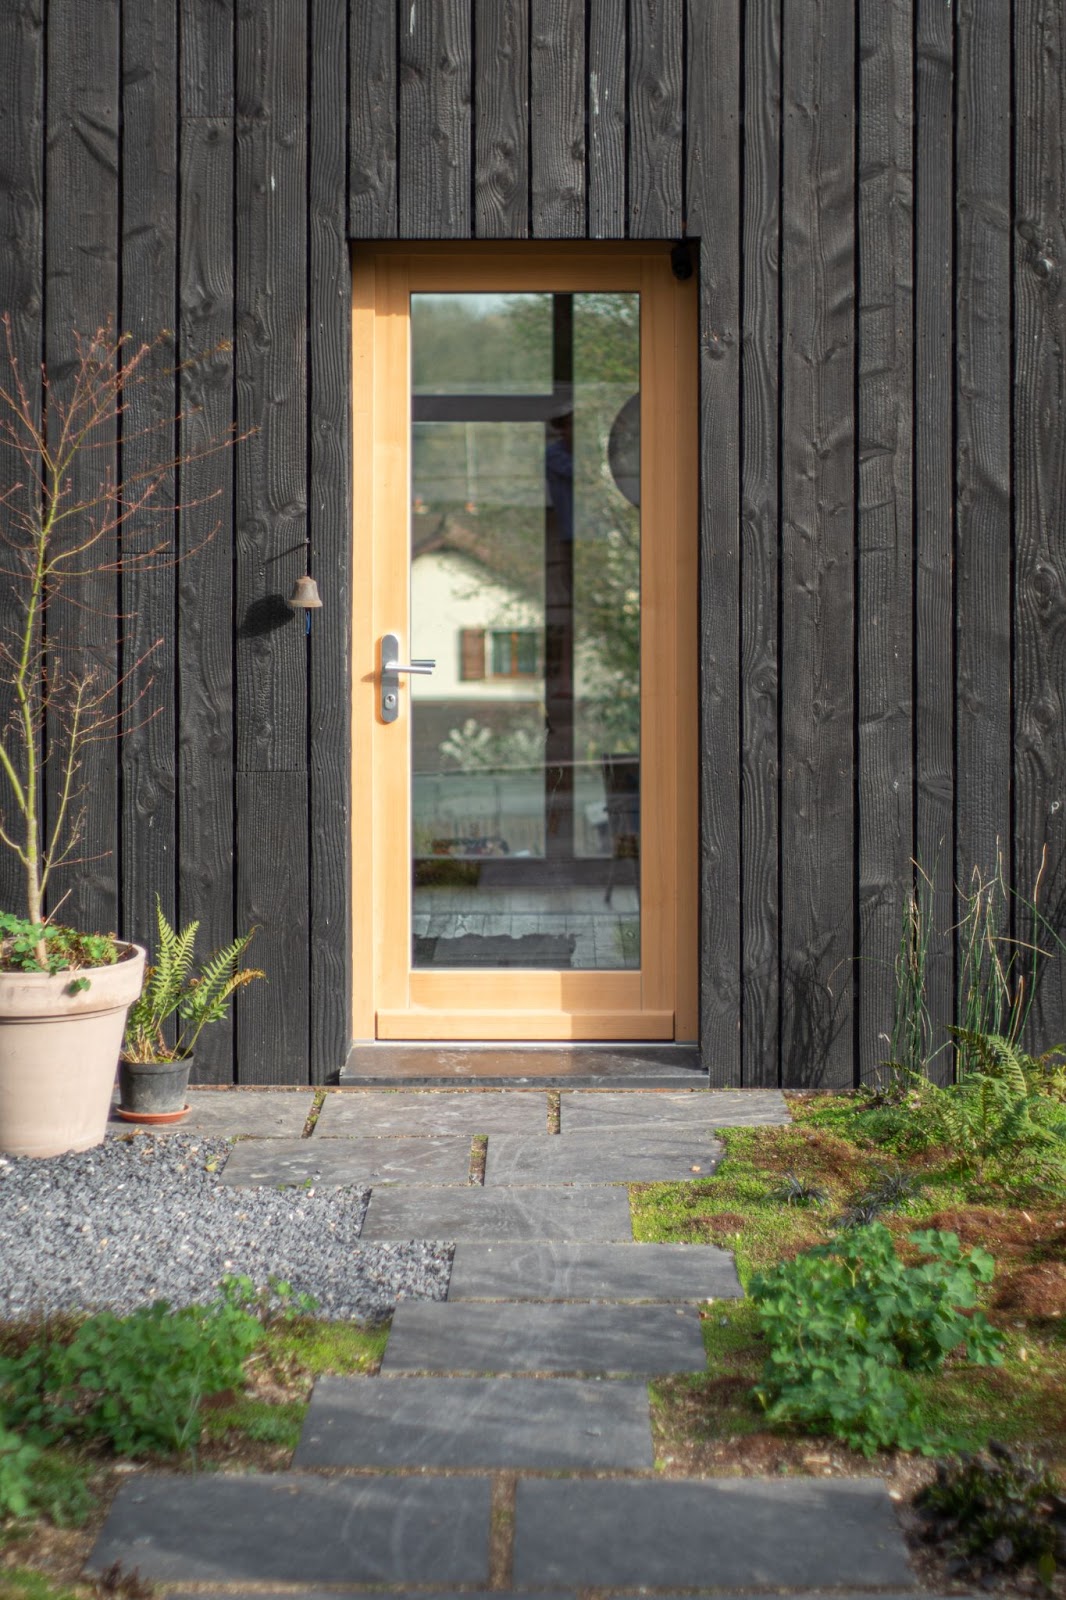 a glass door with a wooden door frame - 
barndominium front door ideas